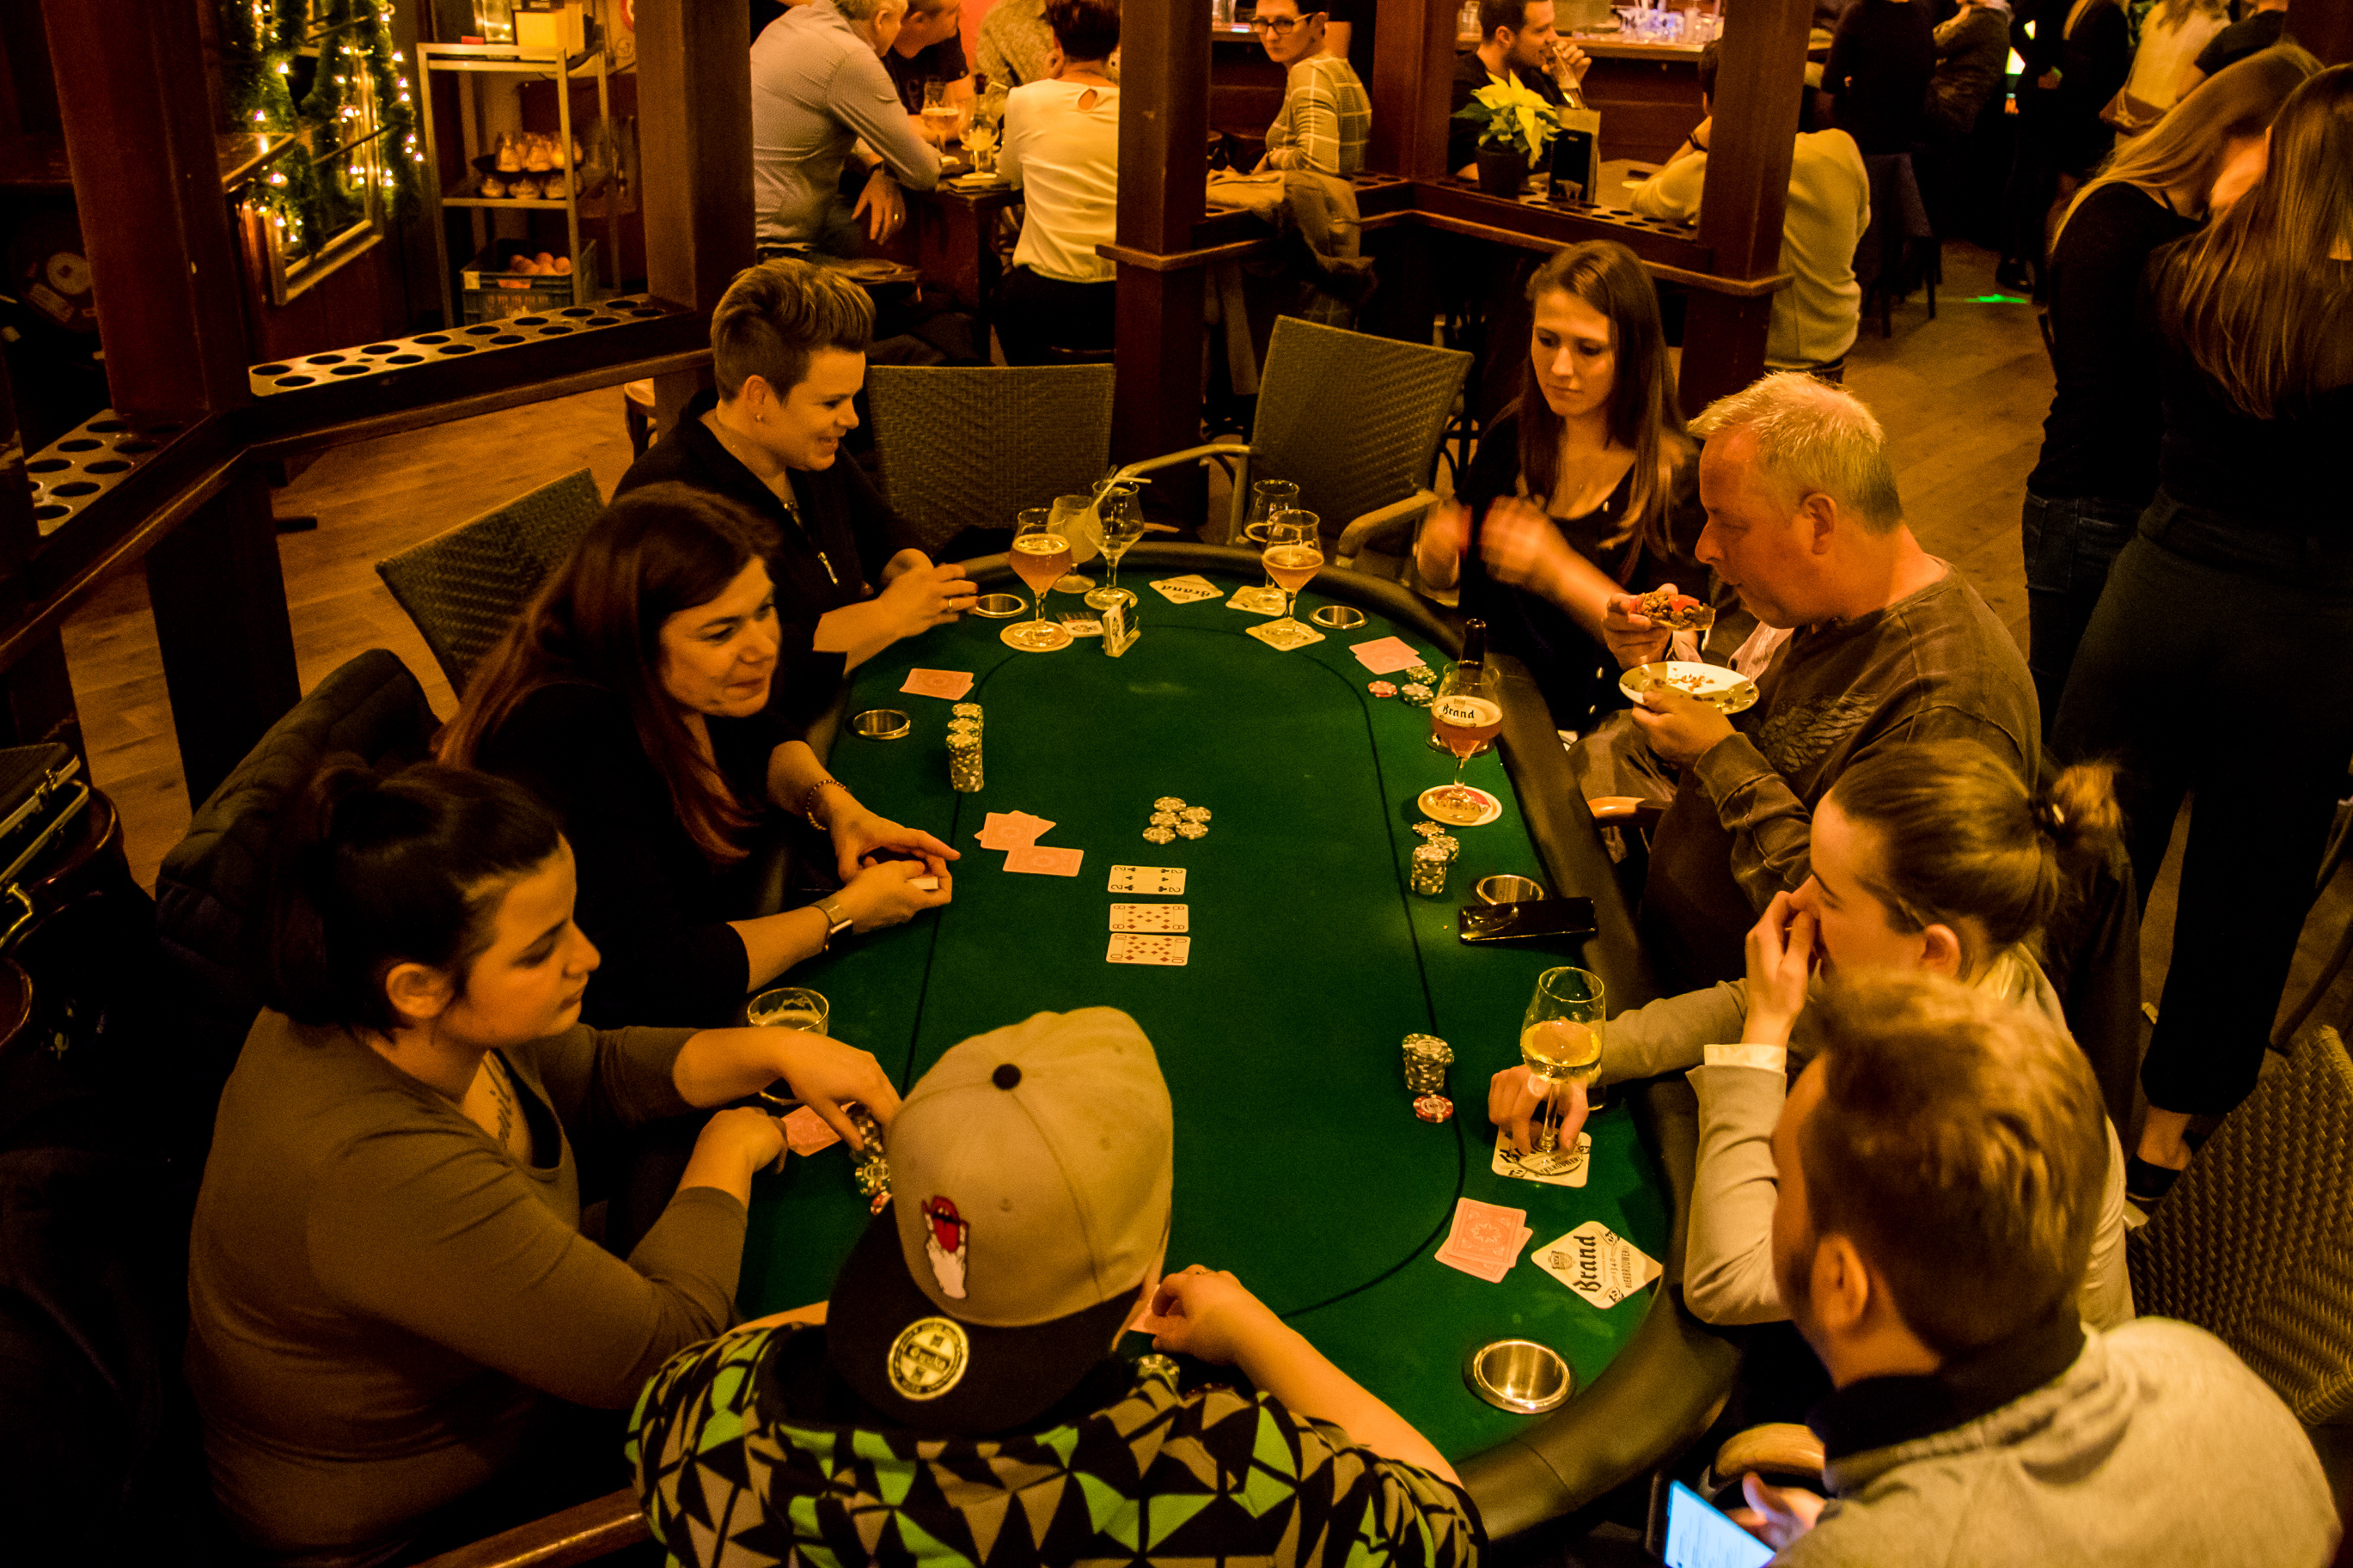 Pokertoernooi, pokerworkshop of gewoon een avondje pokeren